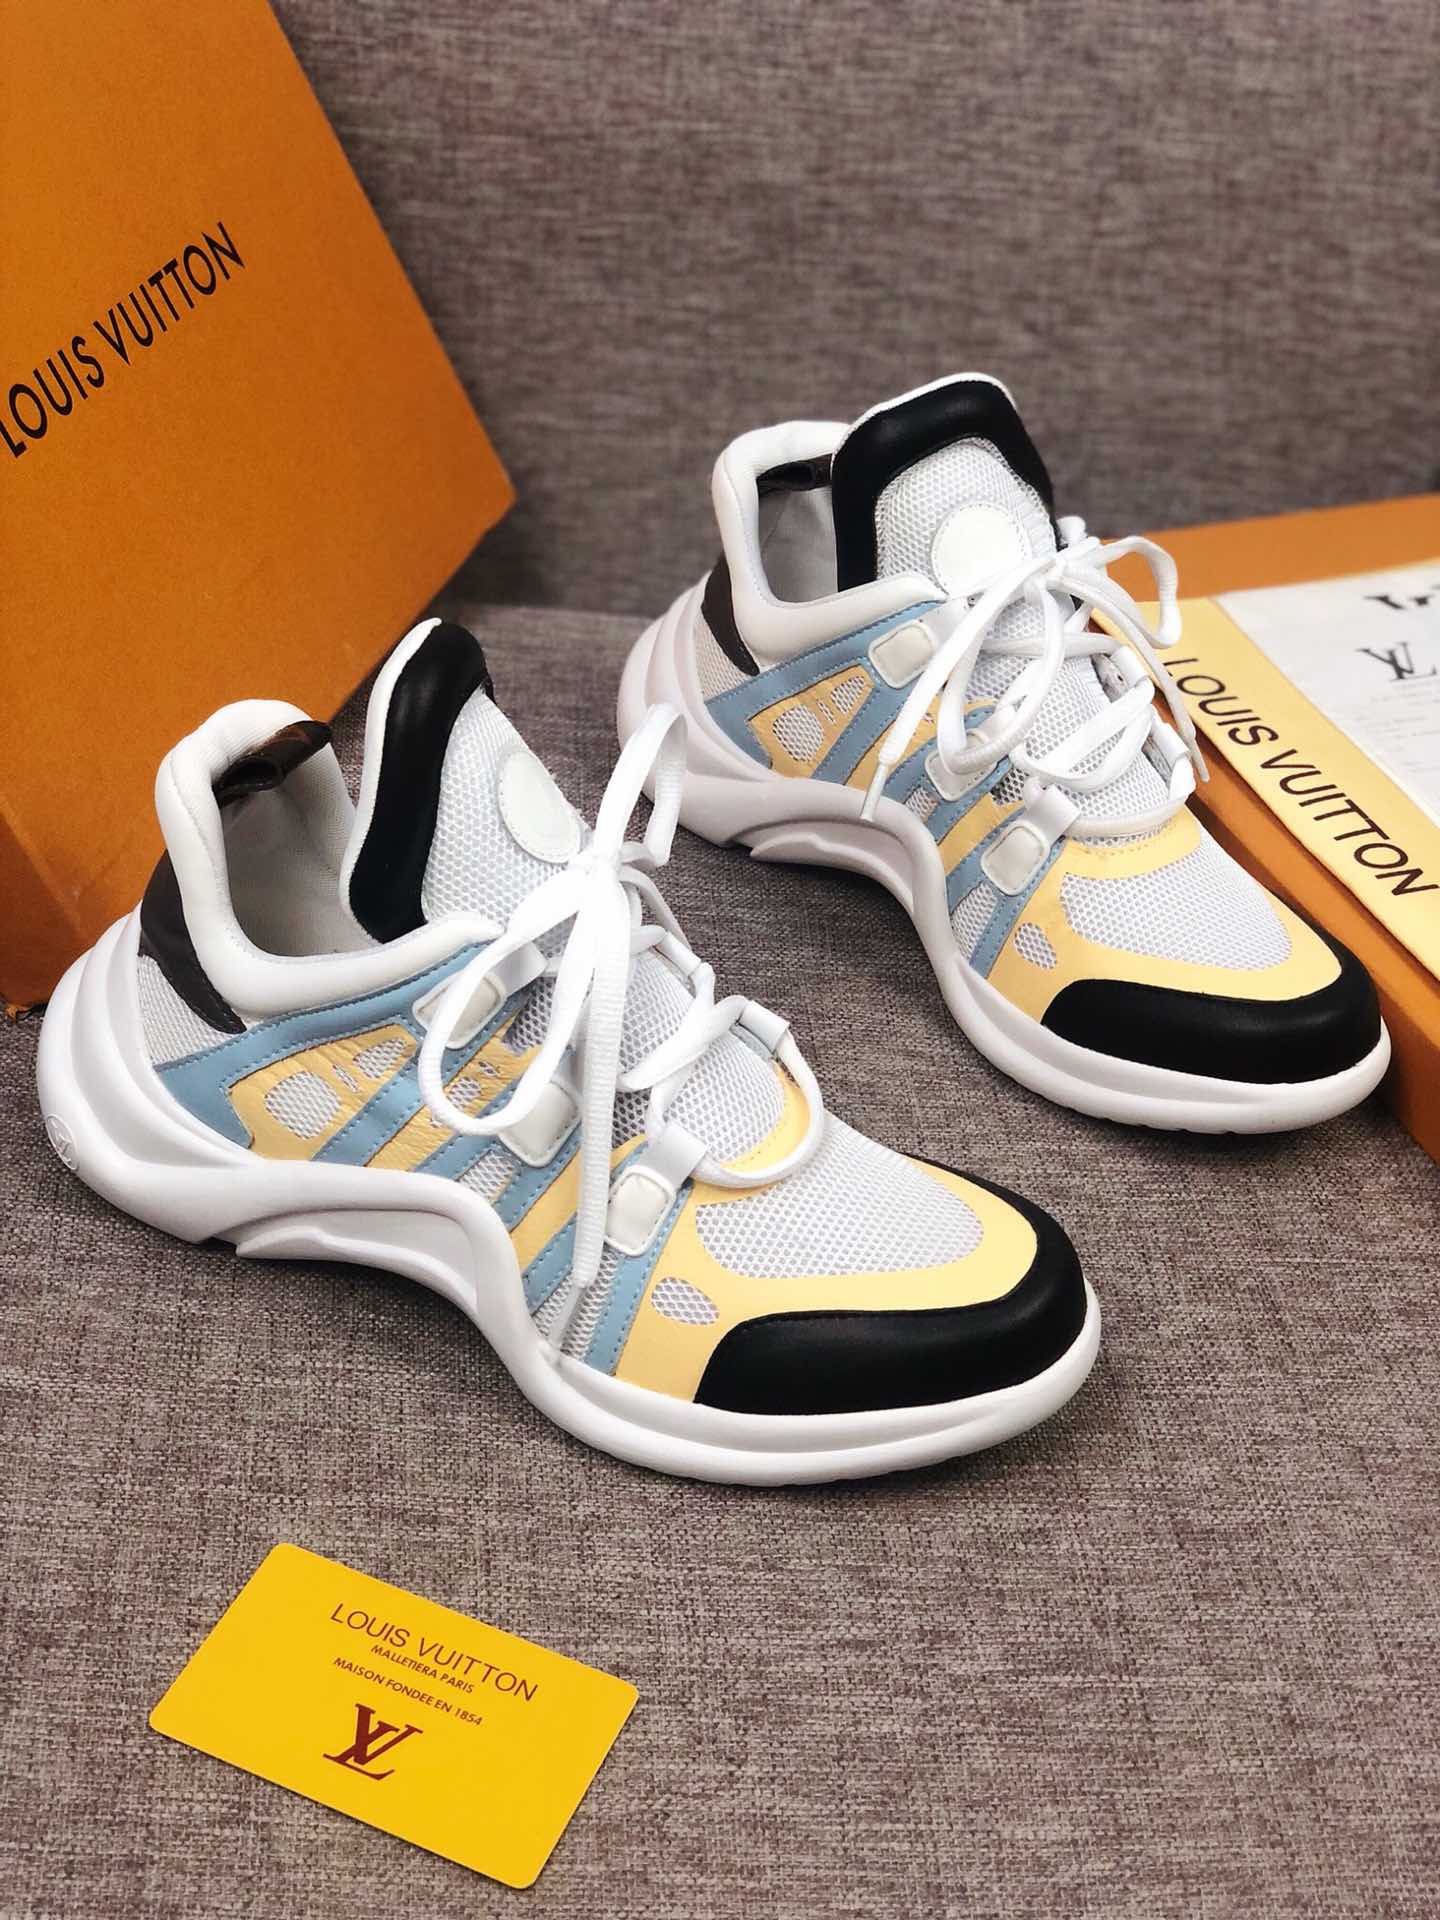 EI -LUV Archlight Black White Yellow Sneaker